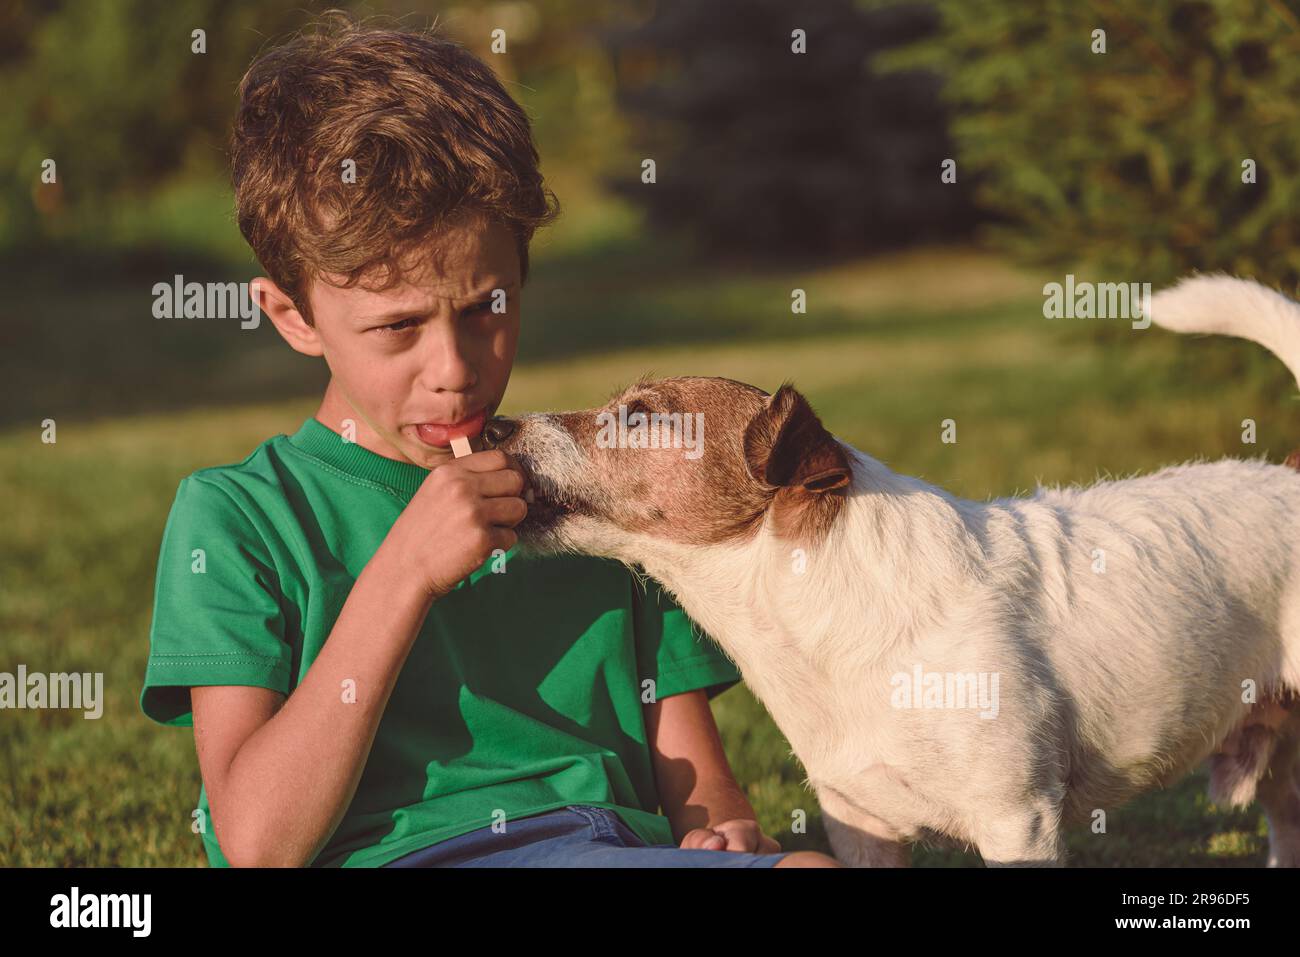 Le jour de l'été, un enfant mange de la popsicle de fruits maison sur le bâton et le chien mendiant pour partager une bouchée Banque D'Images